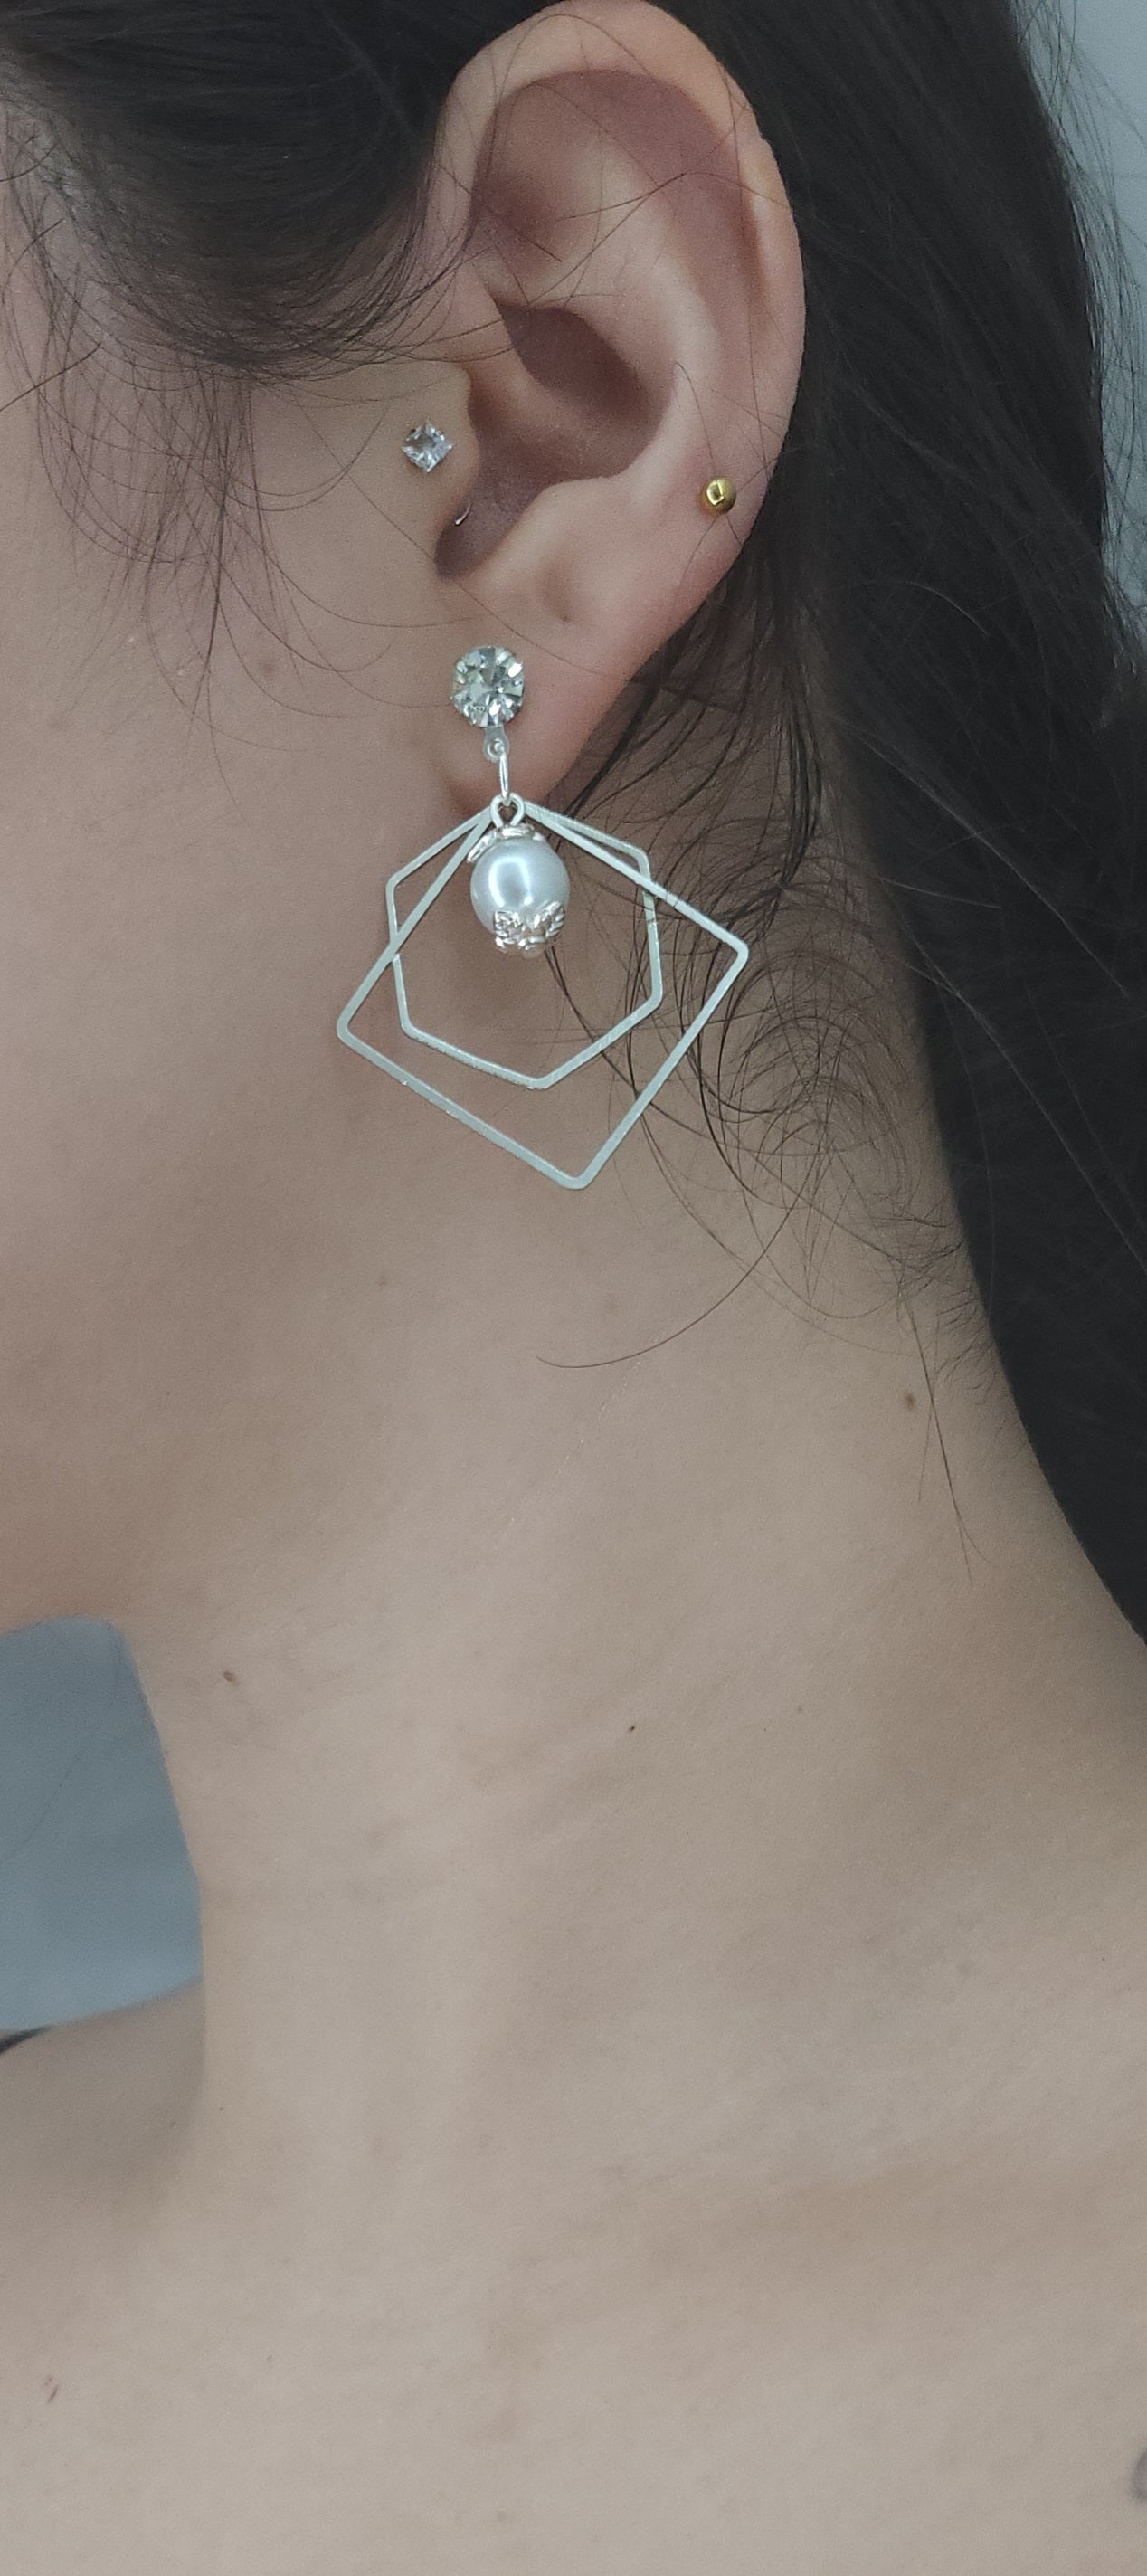 Rombo earrings